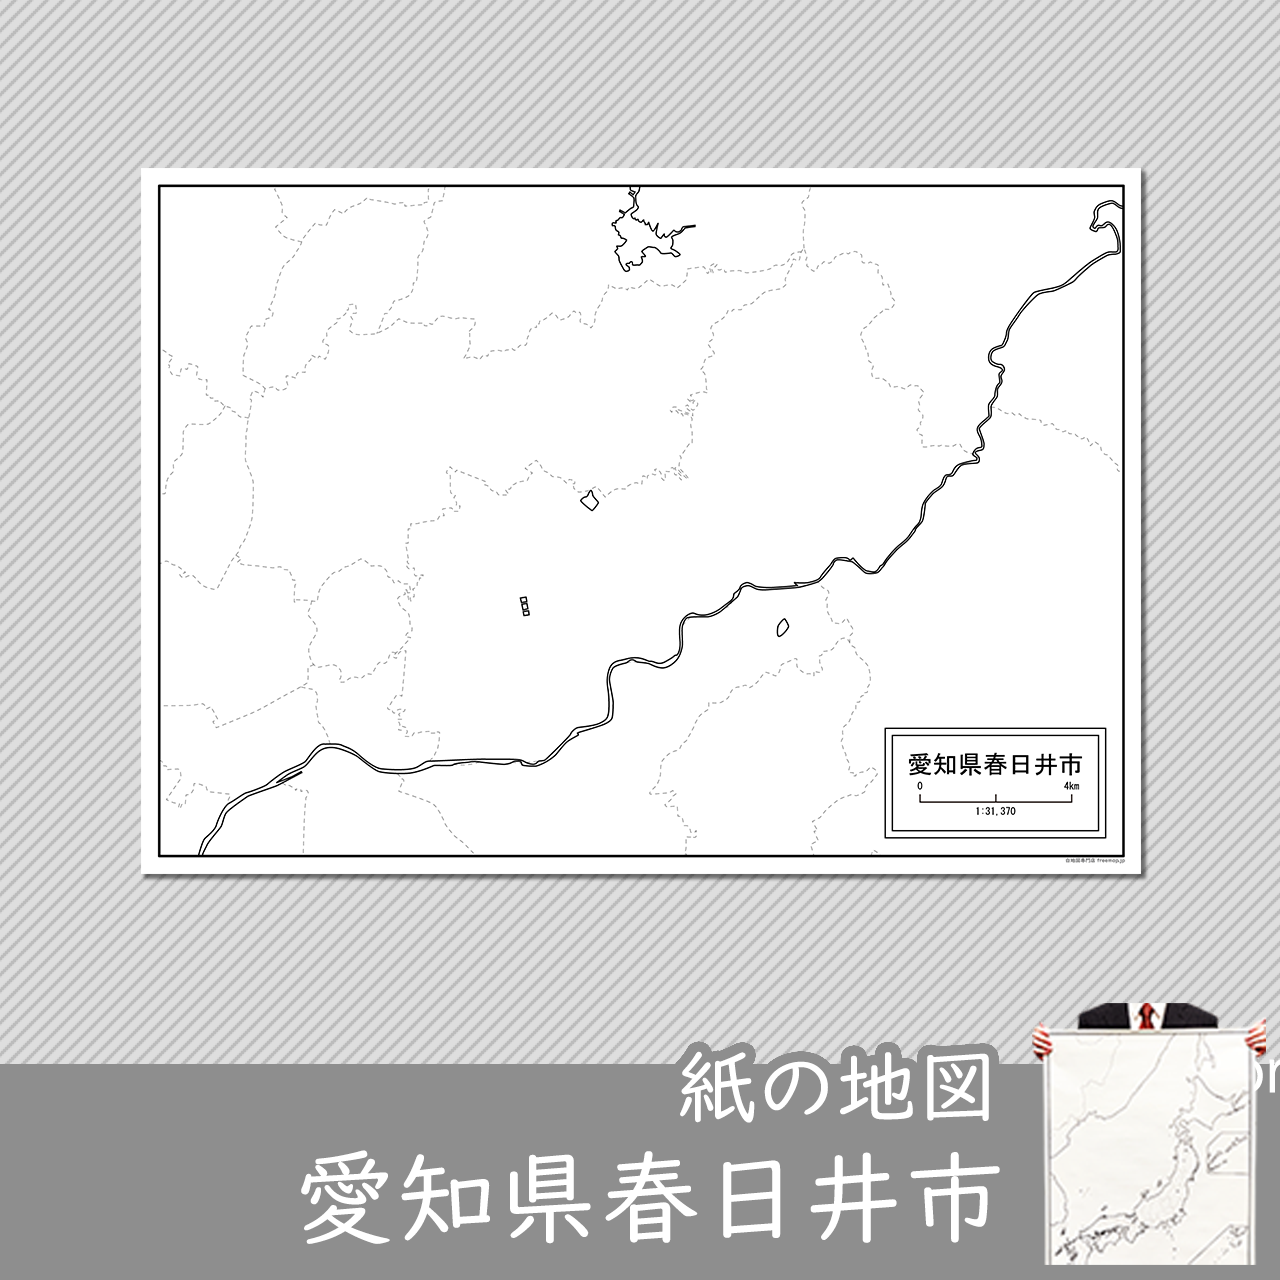 春日井市の紙の白地図のサムネイル